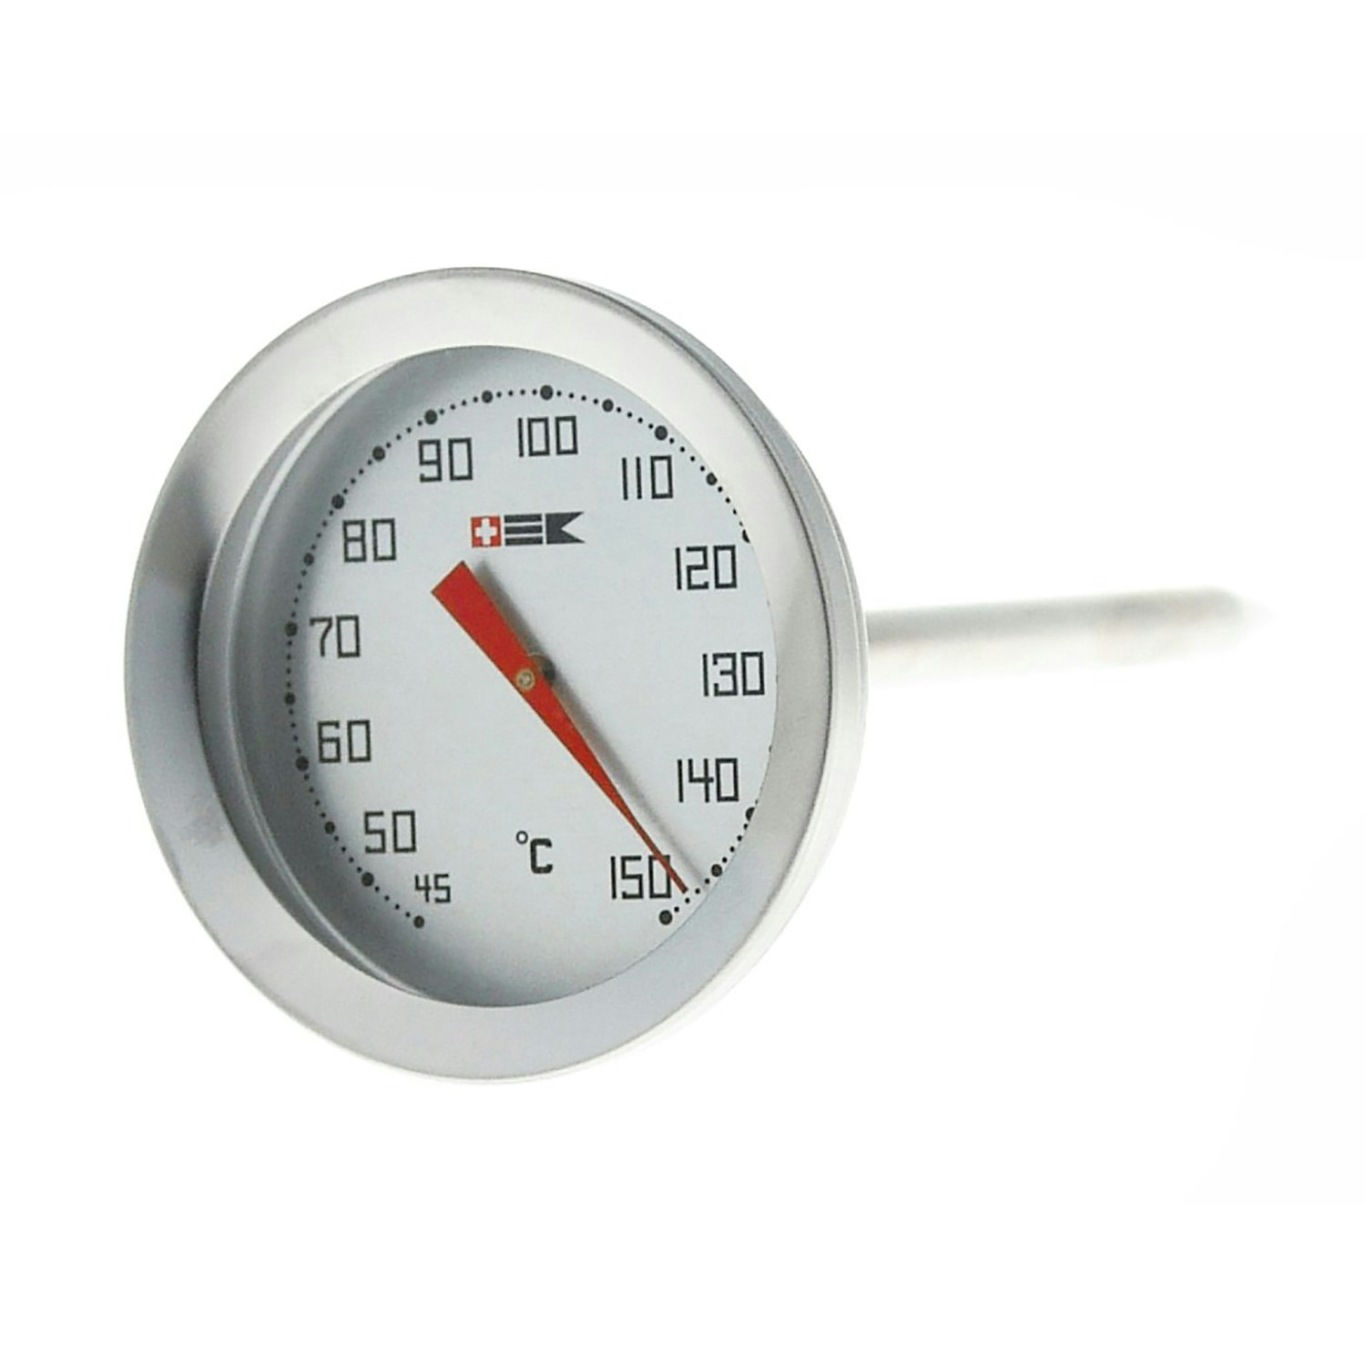 https://royaldesign.com/image/2/bengt-ek-design-meat-thermometer-0-100c-0?w=800&quality=80